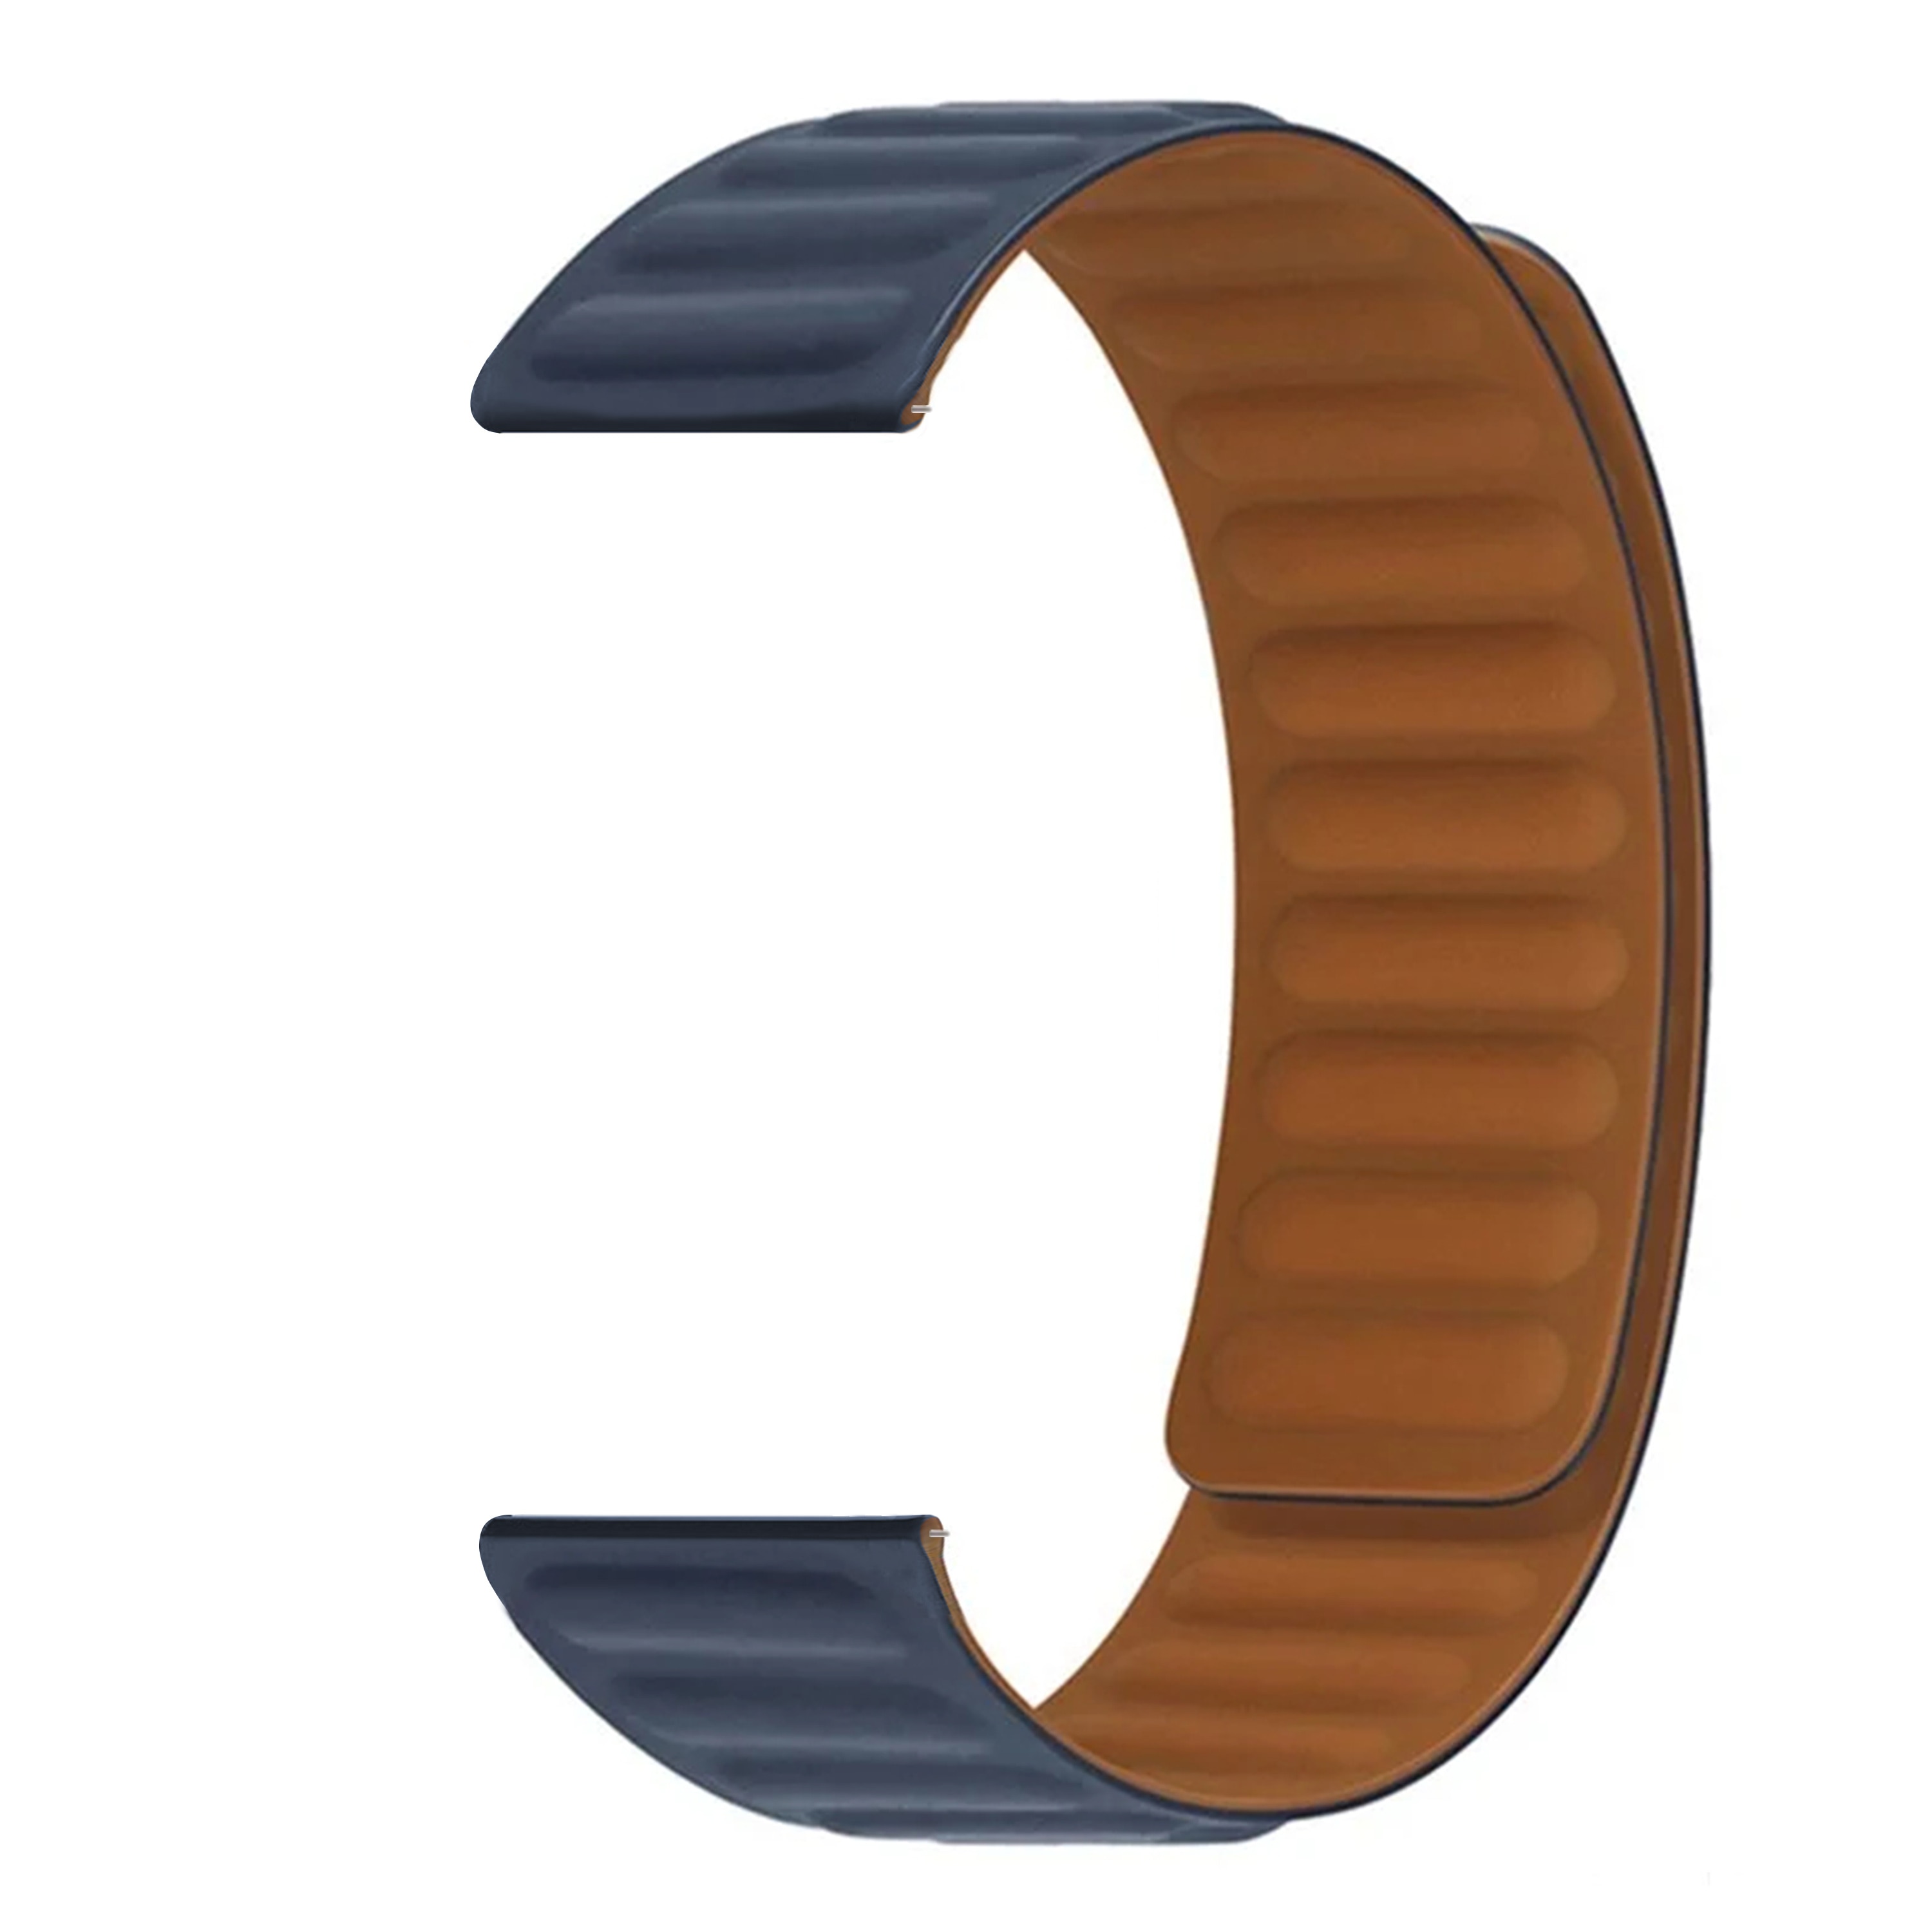 Bracelet magnétique en silicone Amazfit GTS 4 Mini, bleu foncé